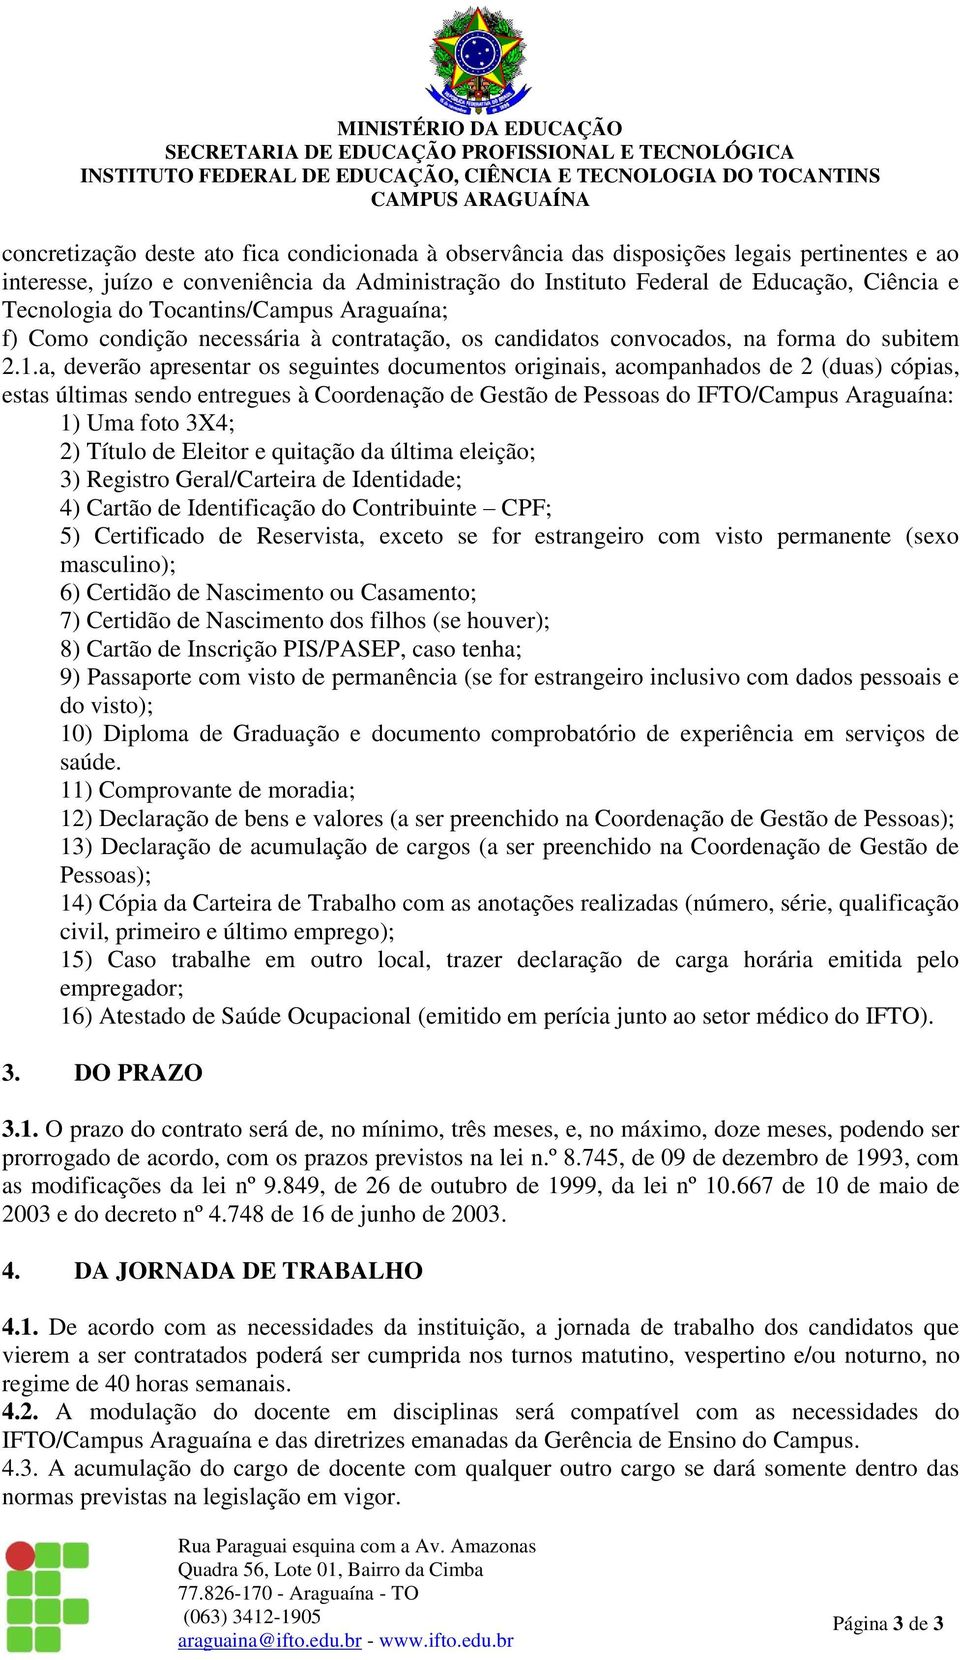 a, deverão apresentar os seguintes documentos originais, acompanhados de 2 (duas) cópias, estas últimas sendo entregues à Coordenação de Gestão de Pessoas do IFTO/Campus Araguaína: 1) Uma foto 3X4;